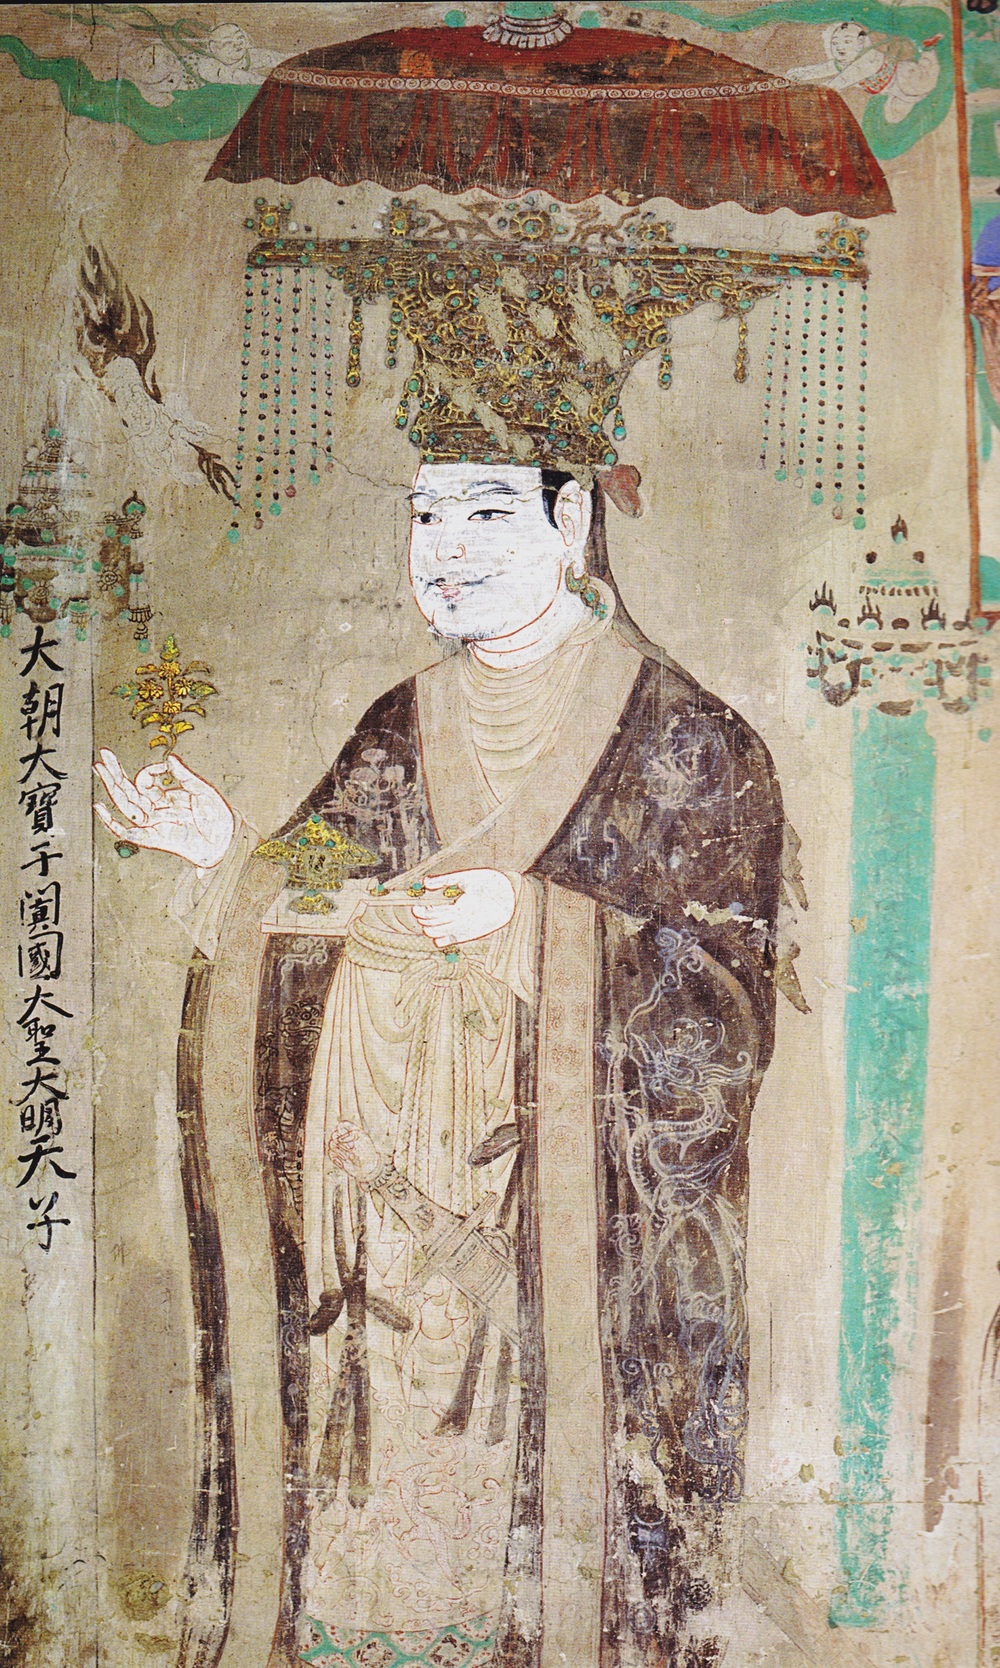 Chân dung Lý Thánh Thiên, vị vua thế kỷ 10 của Khotan. Ảnh: Wiki.